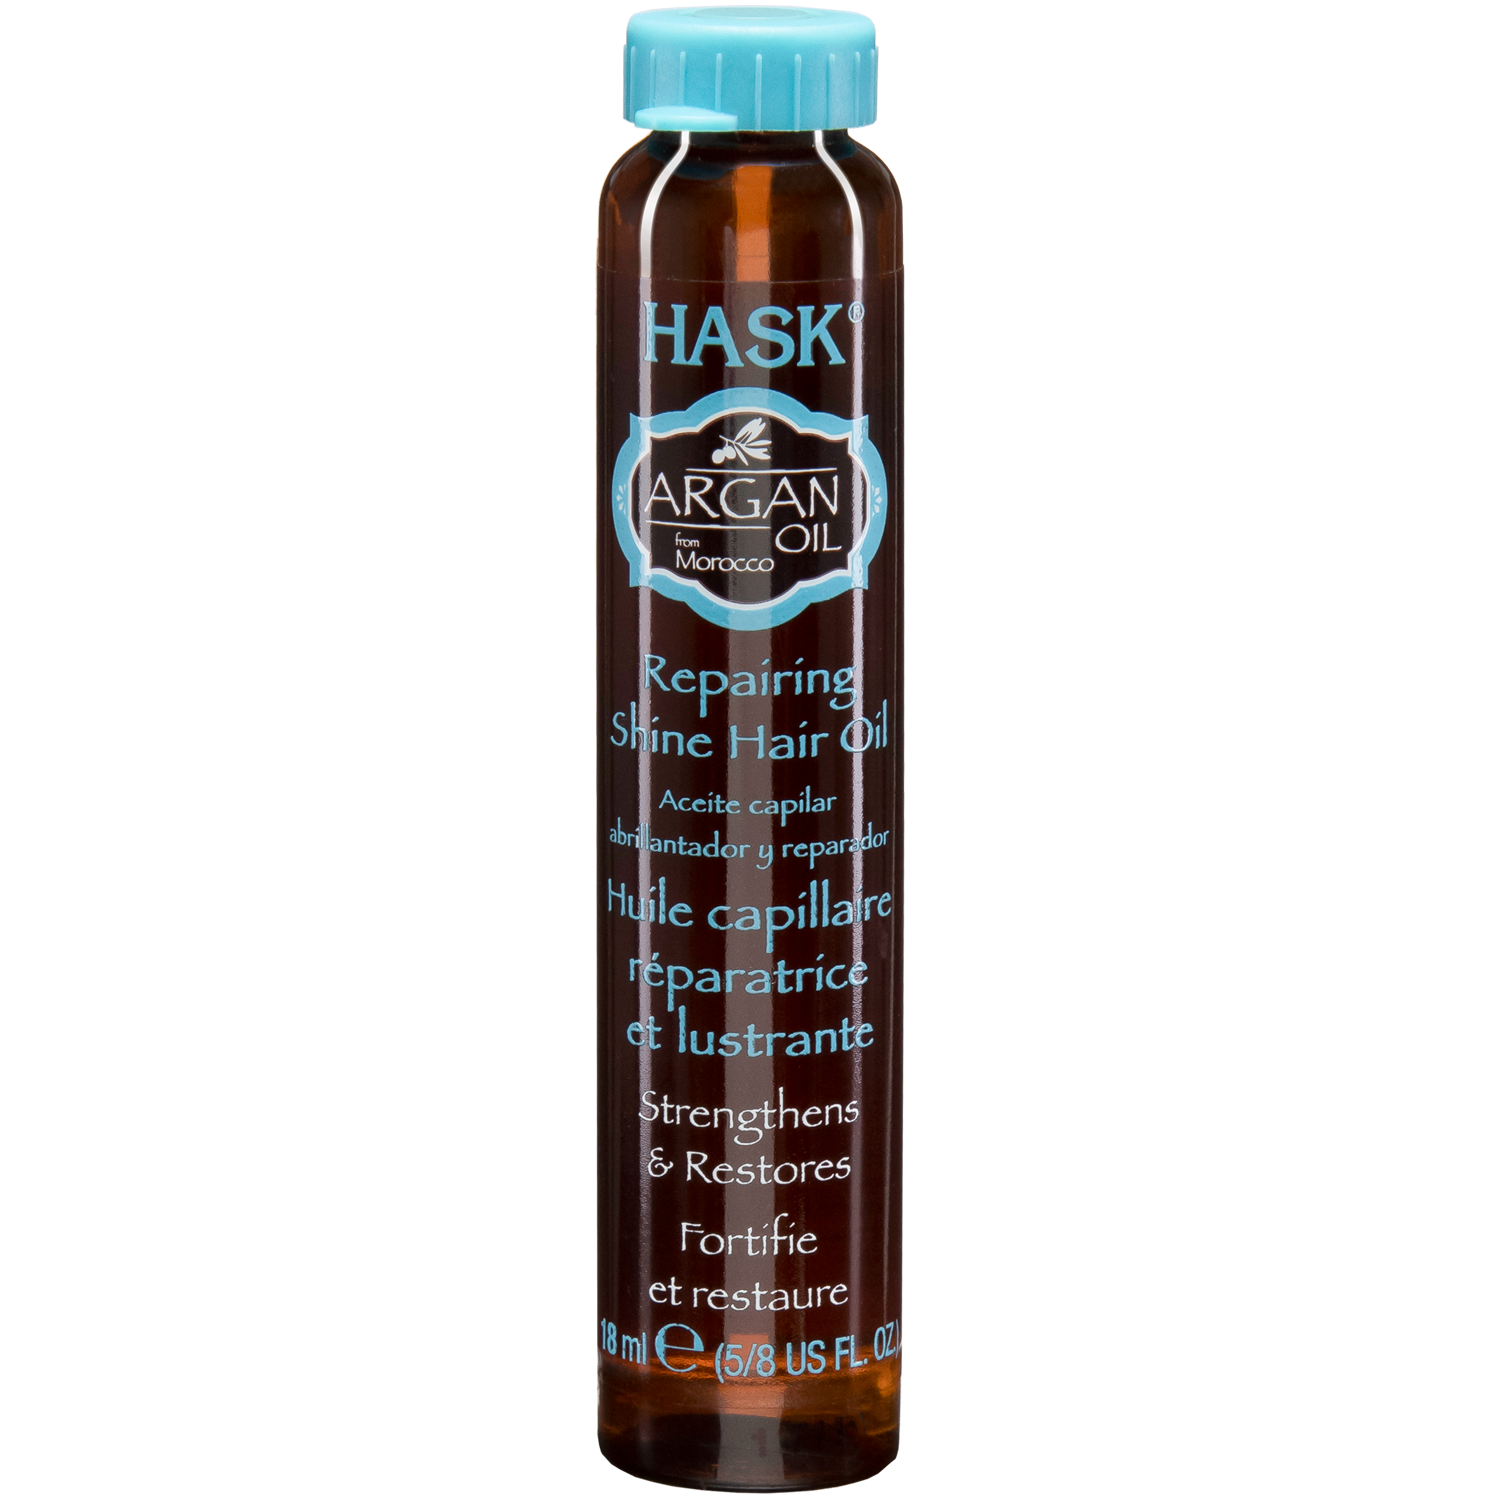 Hask Argan Oil увлажняющее и разглаживающее масло для волос, 18 мл масло для восстановления и придания блеска волосам hask argan oil 59 мл